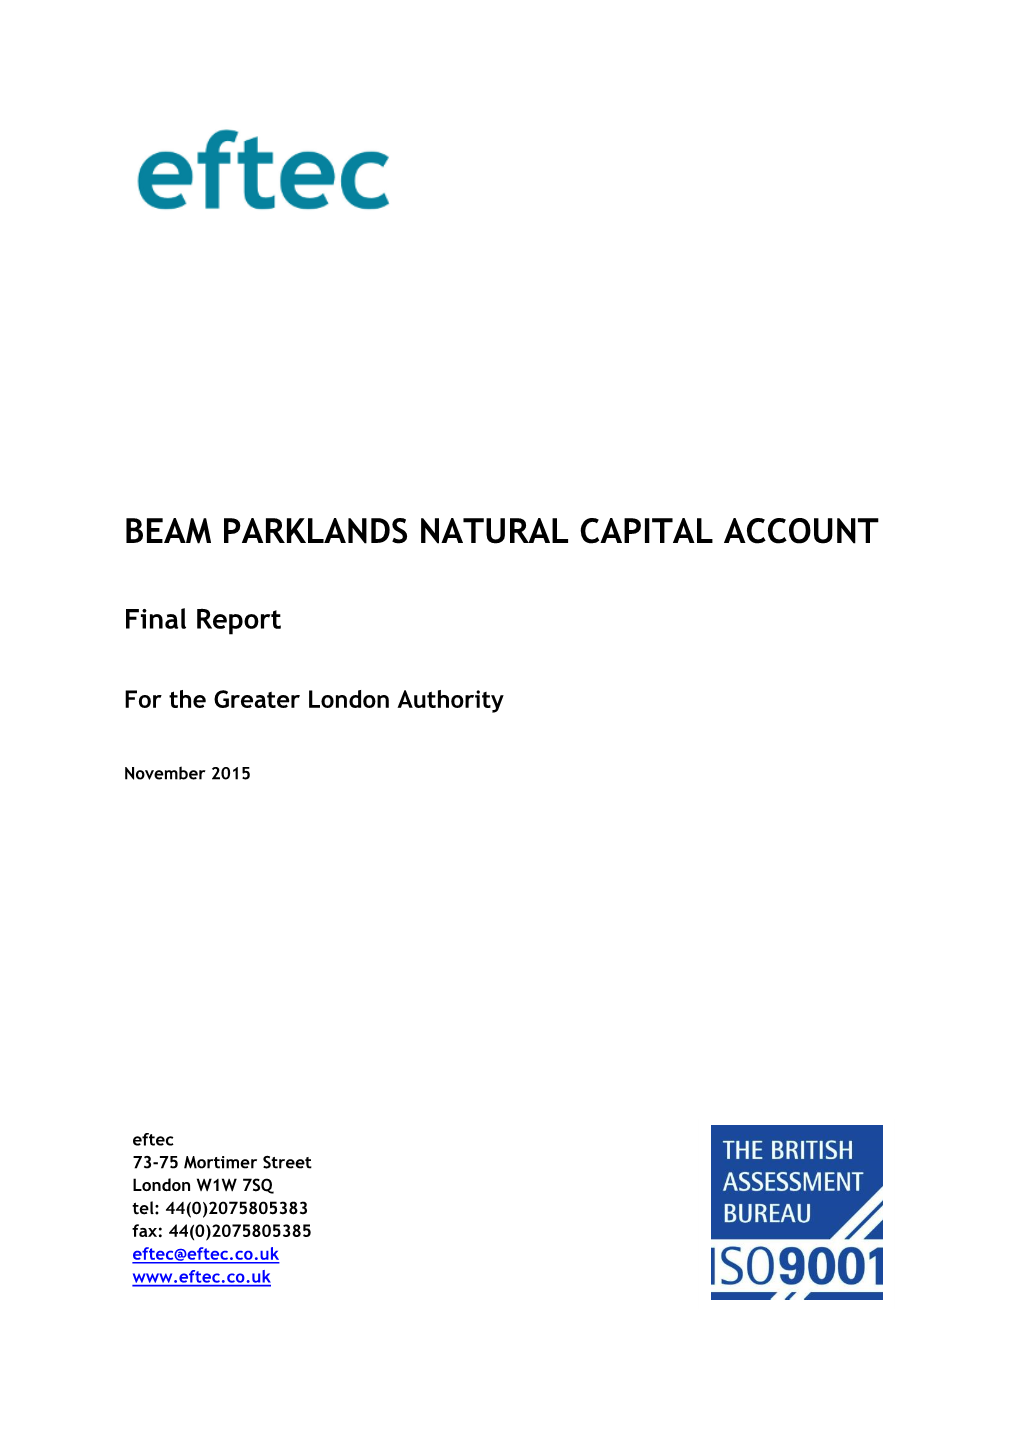 The Natural Capital Account of Beam Parklands 2015 – Eftec